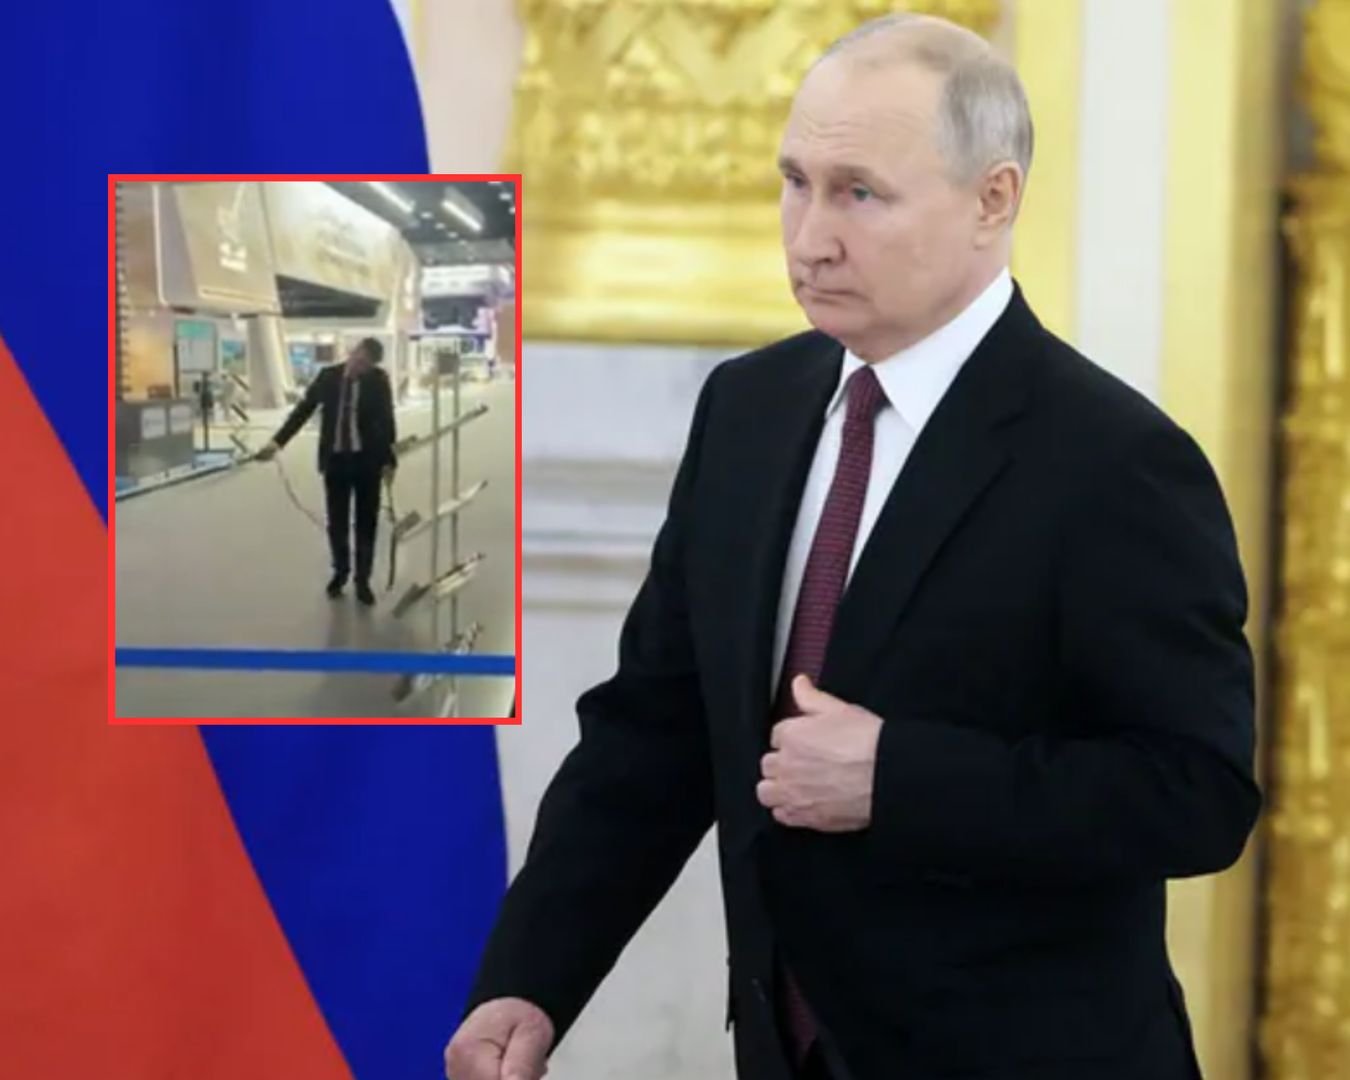 Szykowali się na przyjazd Putina. Nagranie w sieci